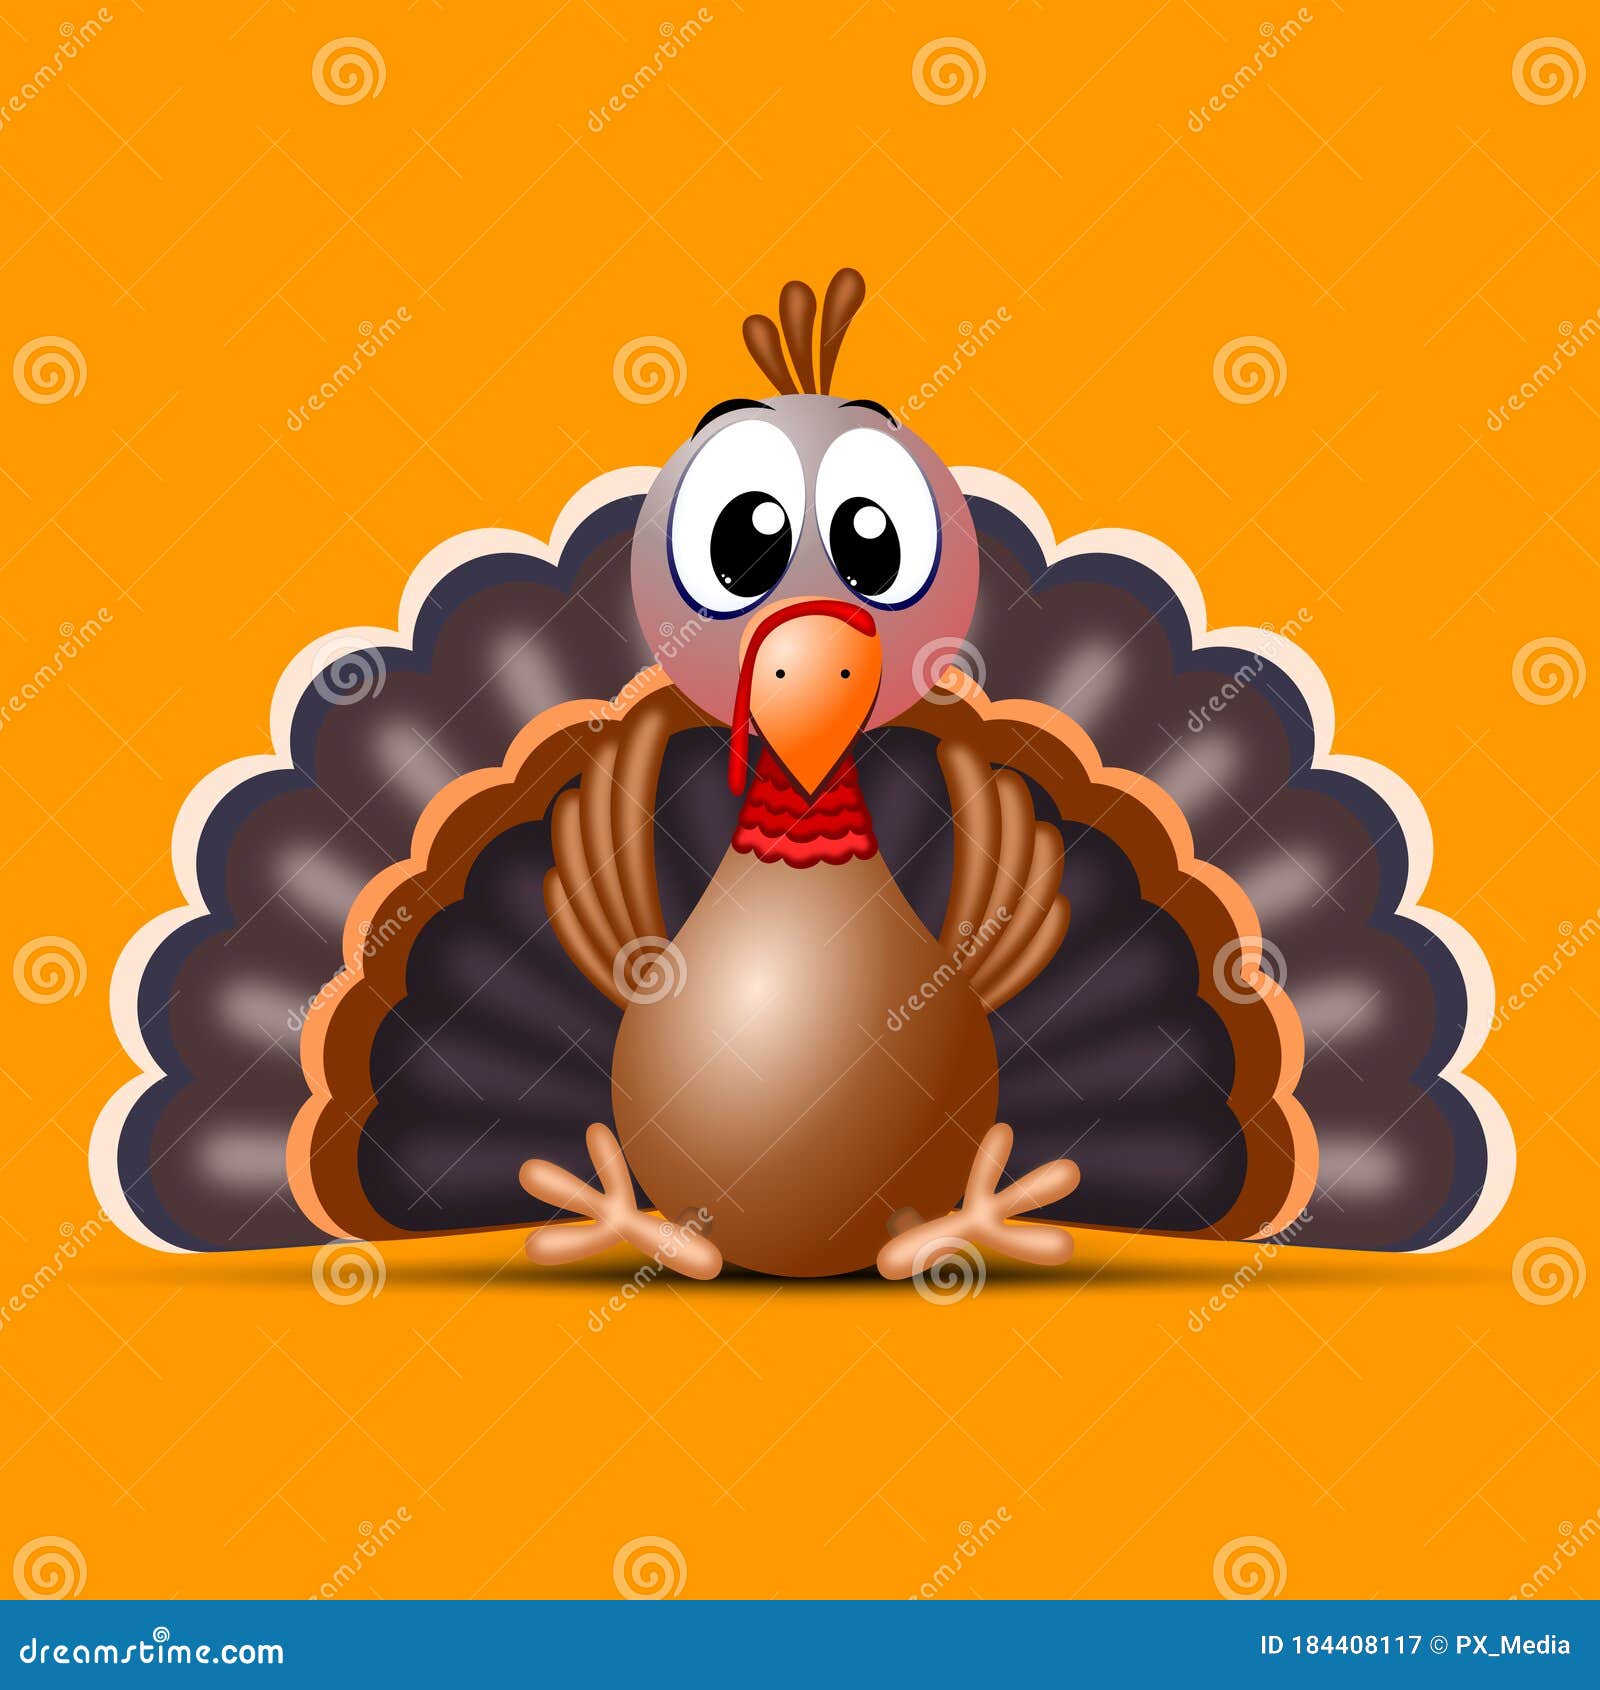 Funny Thanksgiving Turkey Cartoon Illustration Stock Illustration Illustration Of Humor Isolated 184408117